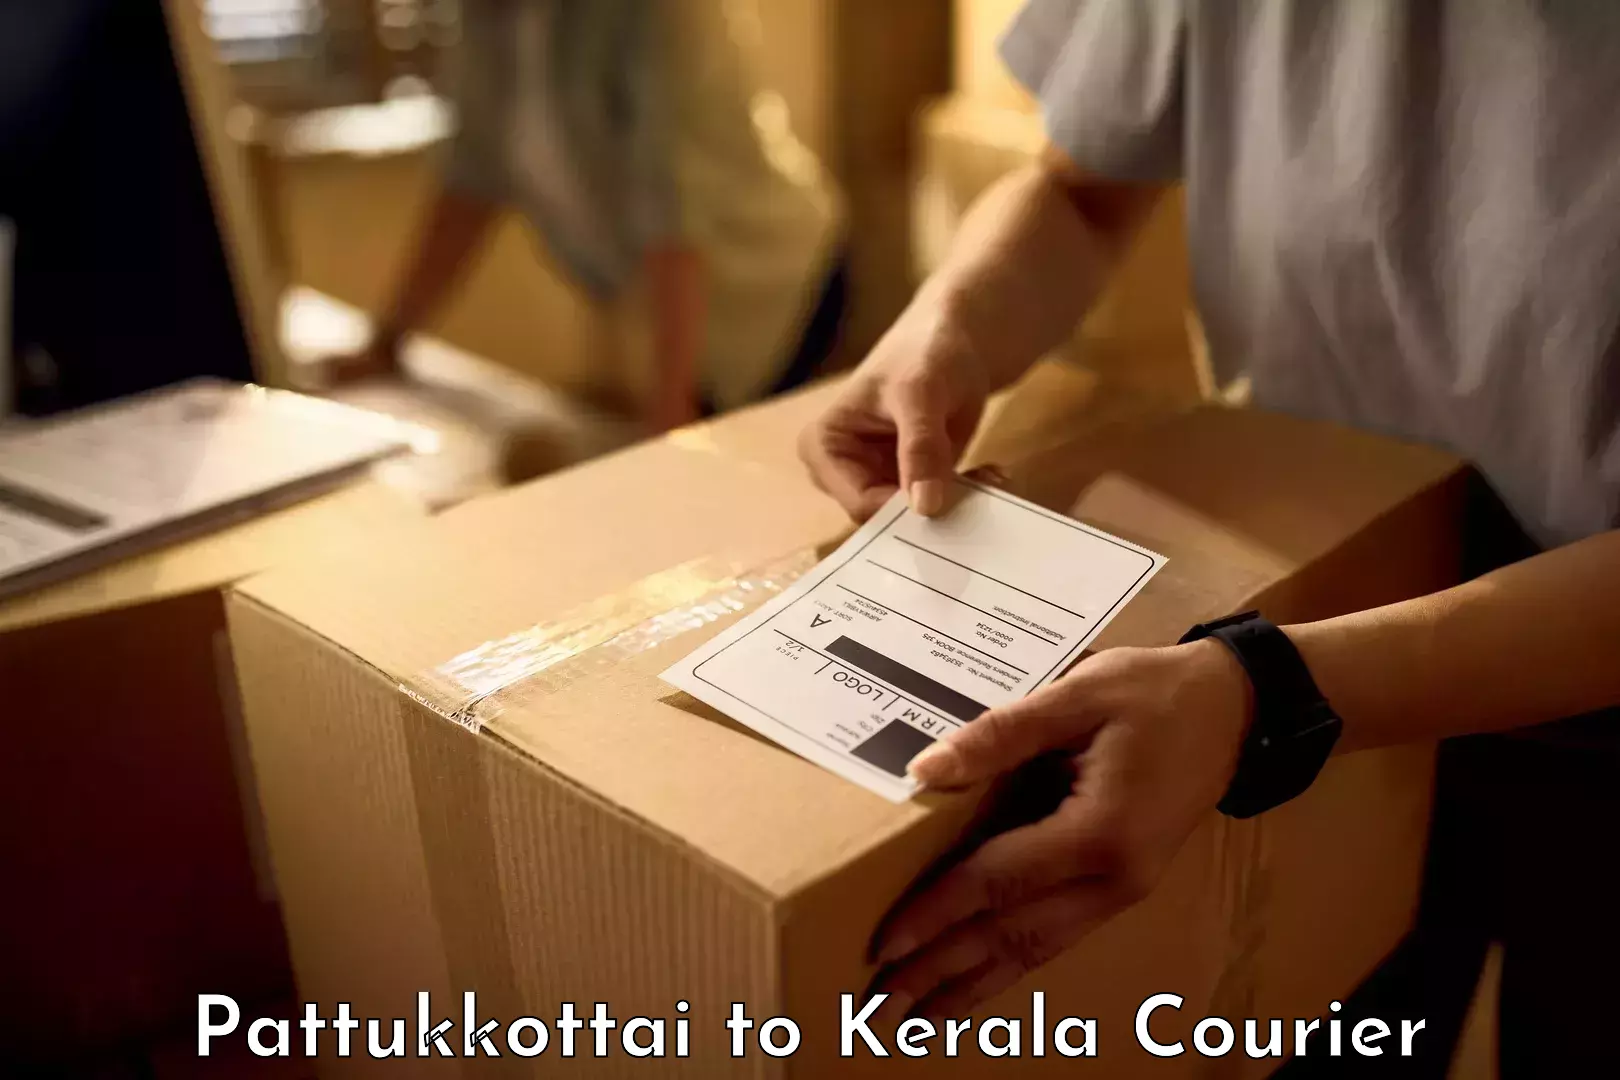 Luggage transport service Pattukkottai to Kerala